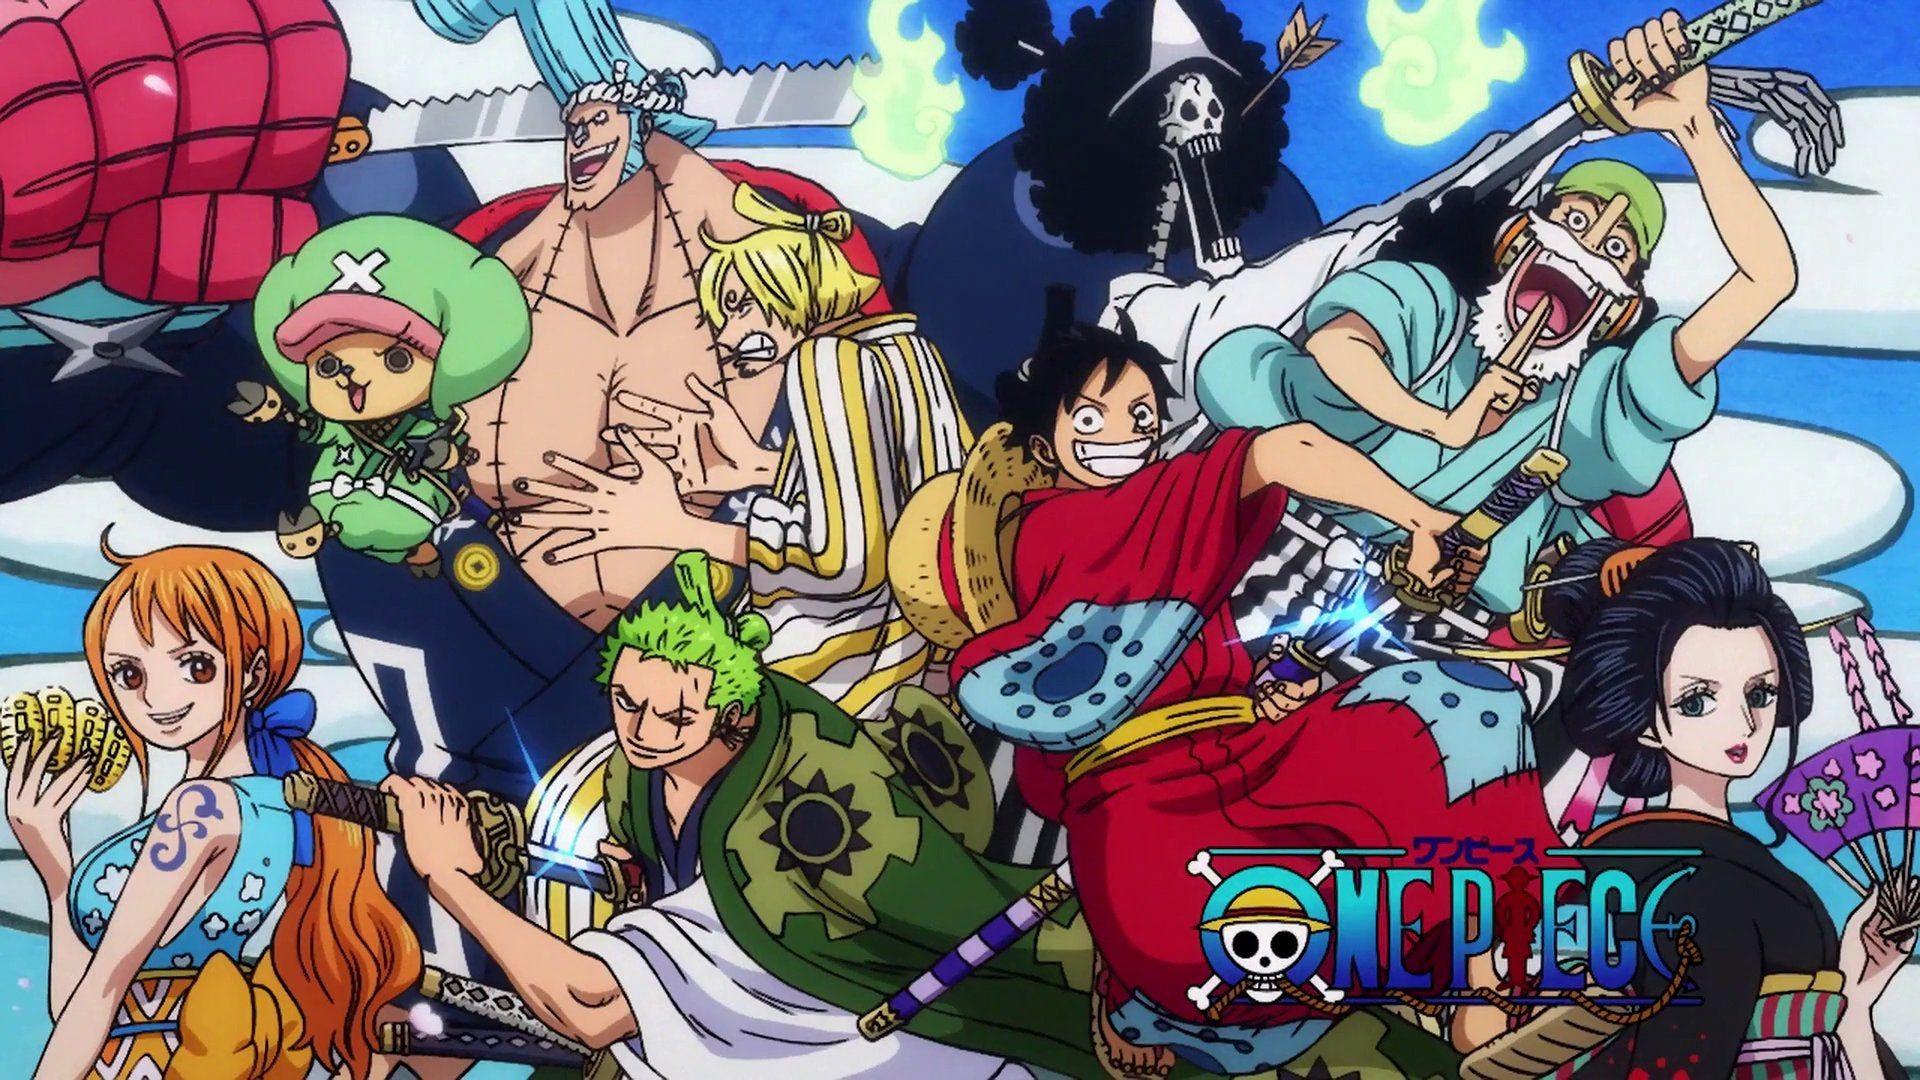 Manga One Piece - Tác phẩm nổi tiếng của tác giả Eiichiro Oda, mang đến những giây phút giải trí đầy thú vị và hồi hộp. Hình nền Manga One Piece với độ phân giải 1920X1080 sẽ làm bạn khám phá thế giới One Piece một cách hoàn hảo nhất. Hãy cùng thử sức với bộ sưu tập hình nền Manga One Piece đầy ấn tượng này.